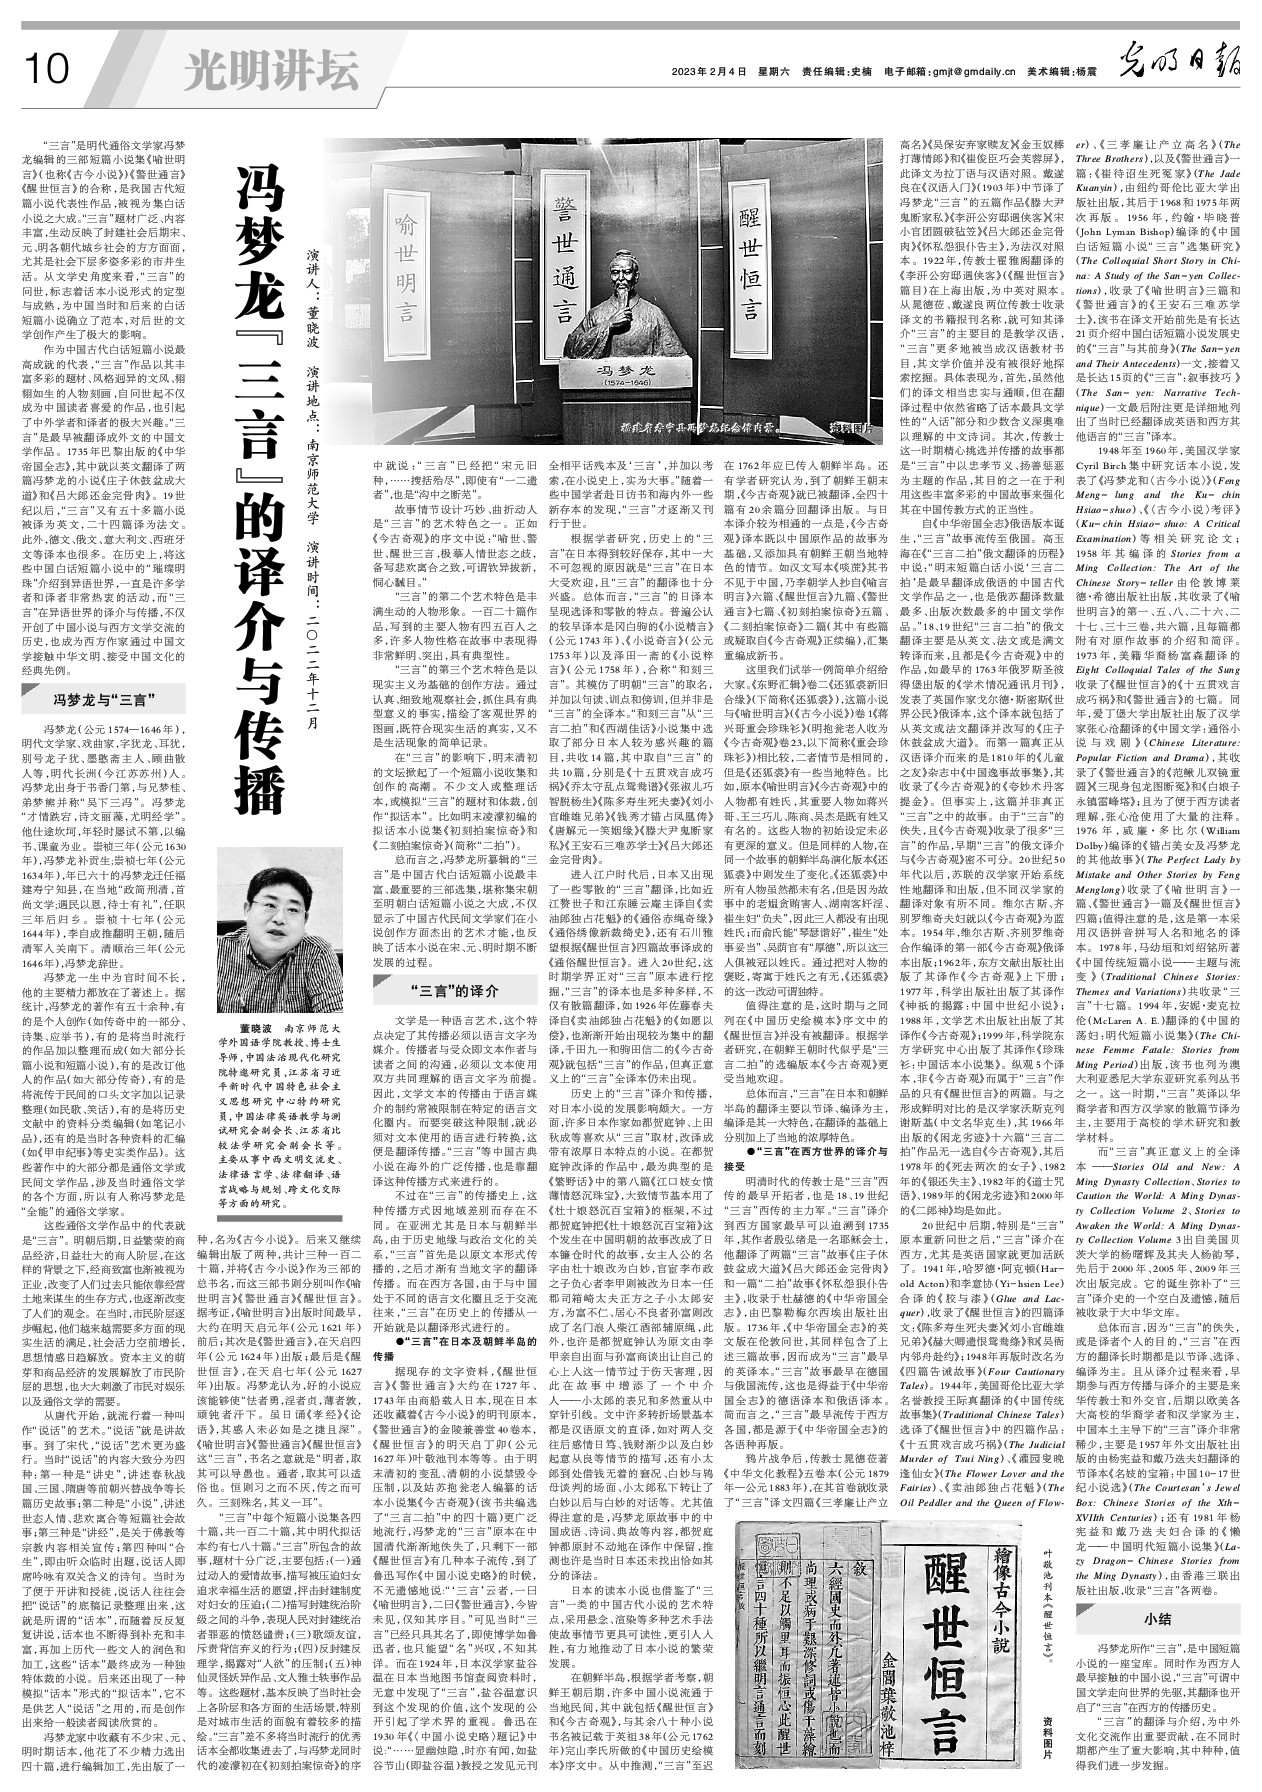 冯梦龙“三言”的译介与传播-光明日报-光明网